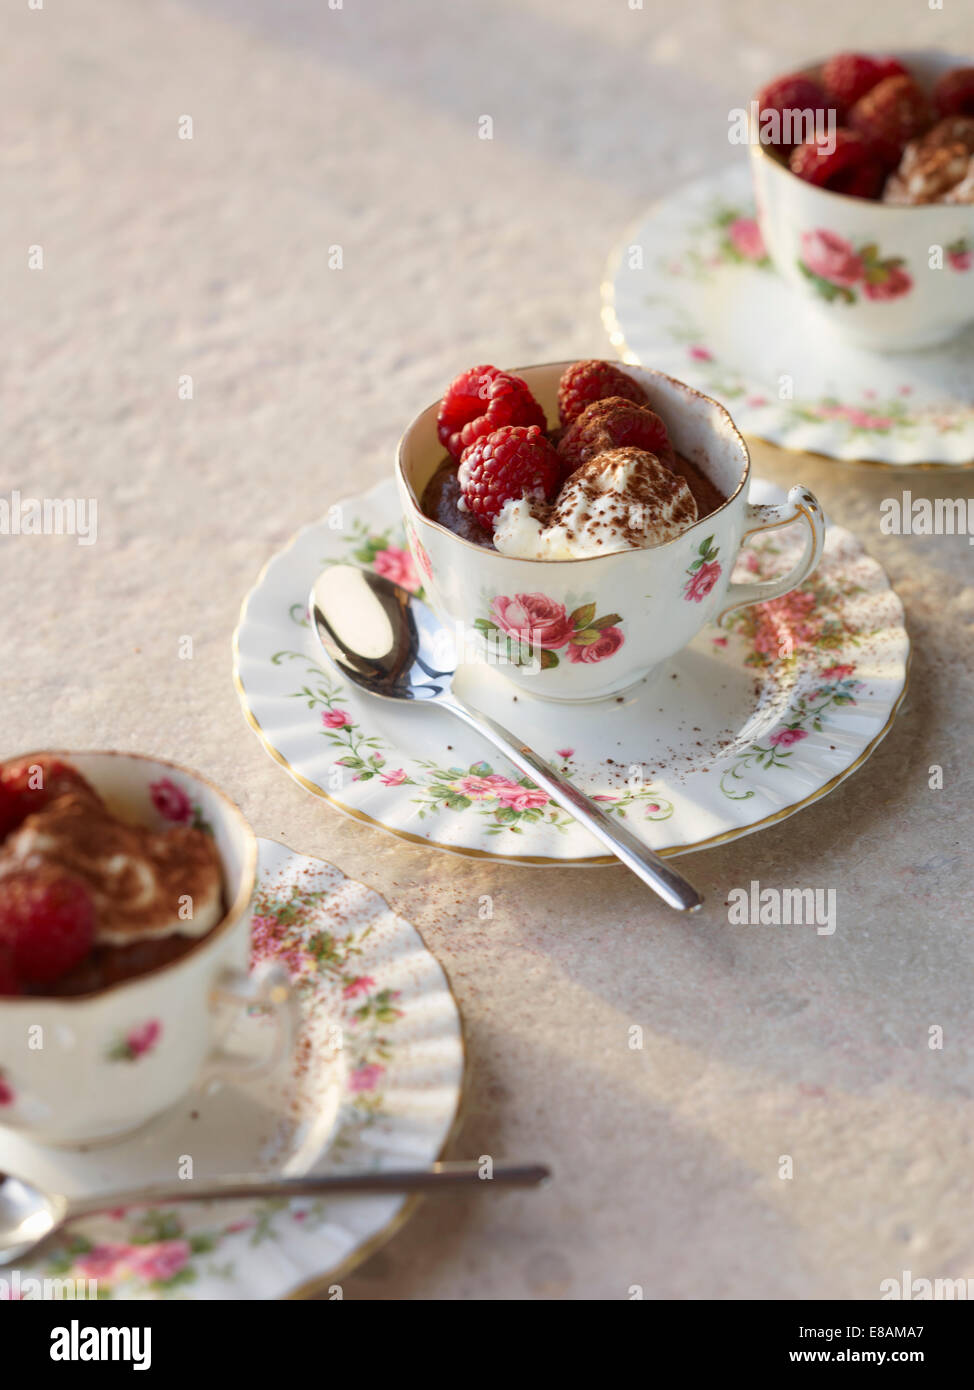 La mousse au chocolat avec des framboises et de la crème en vintage tea cups Banque D'Images